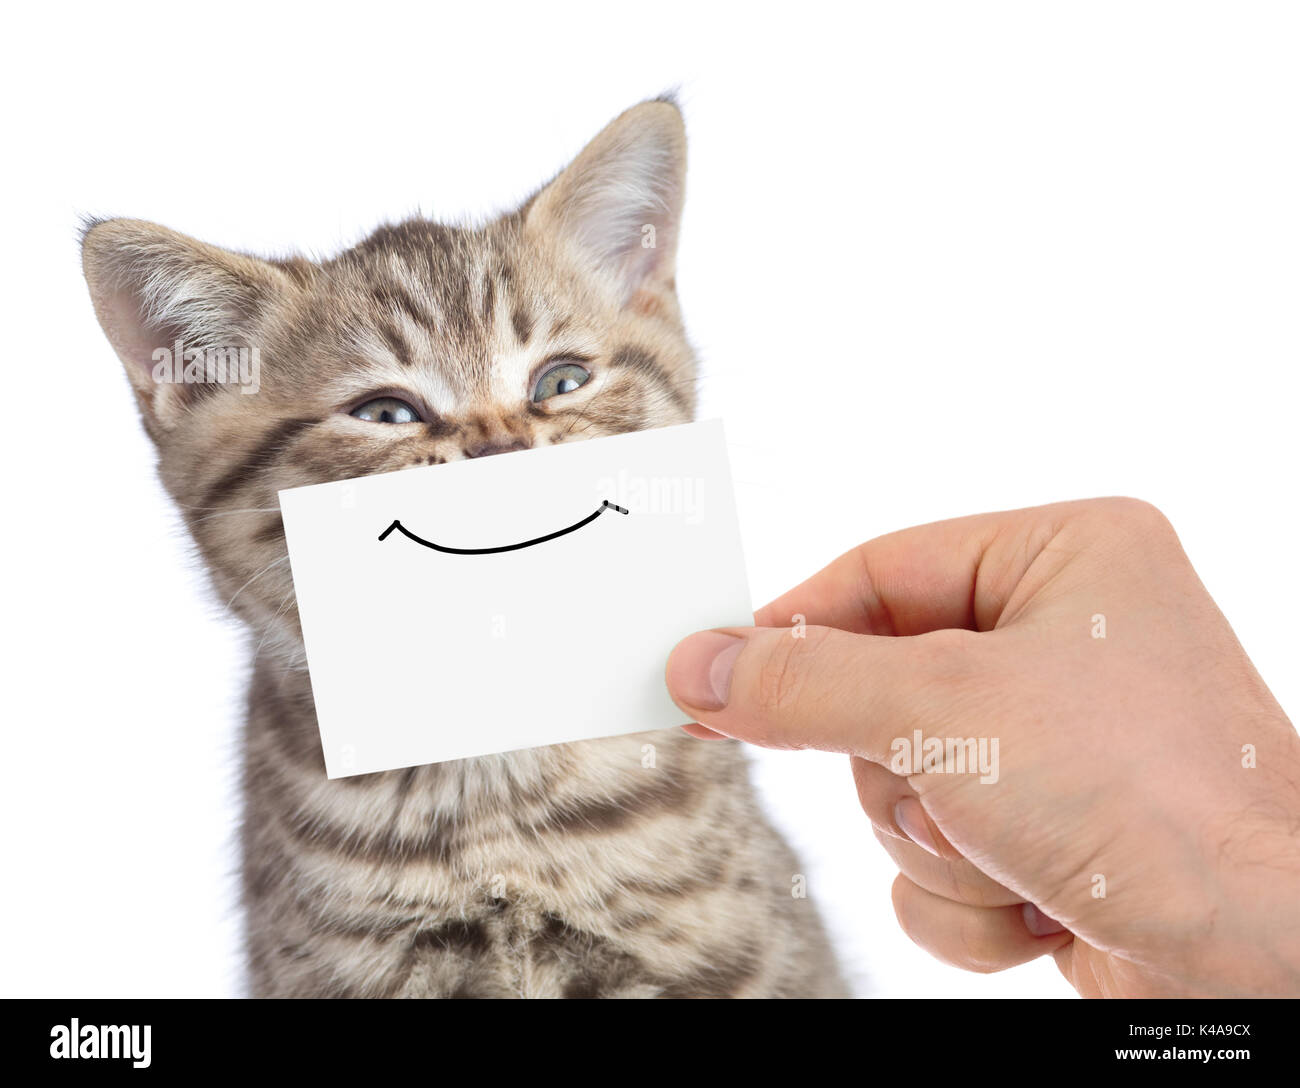 Funny Happy cat giovani ritratto con sorriso sul cartone isolato su bianco Foto Stock